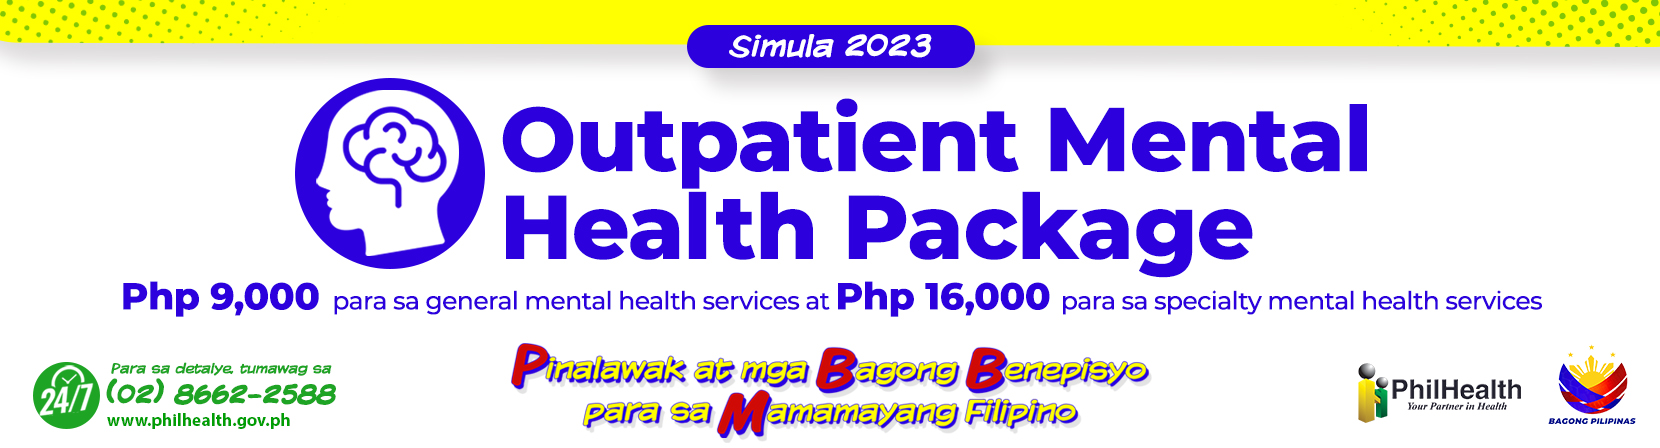 Simula 2023 - Outpatient Mental